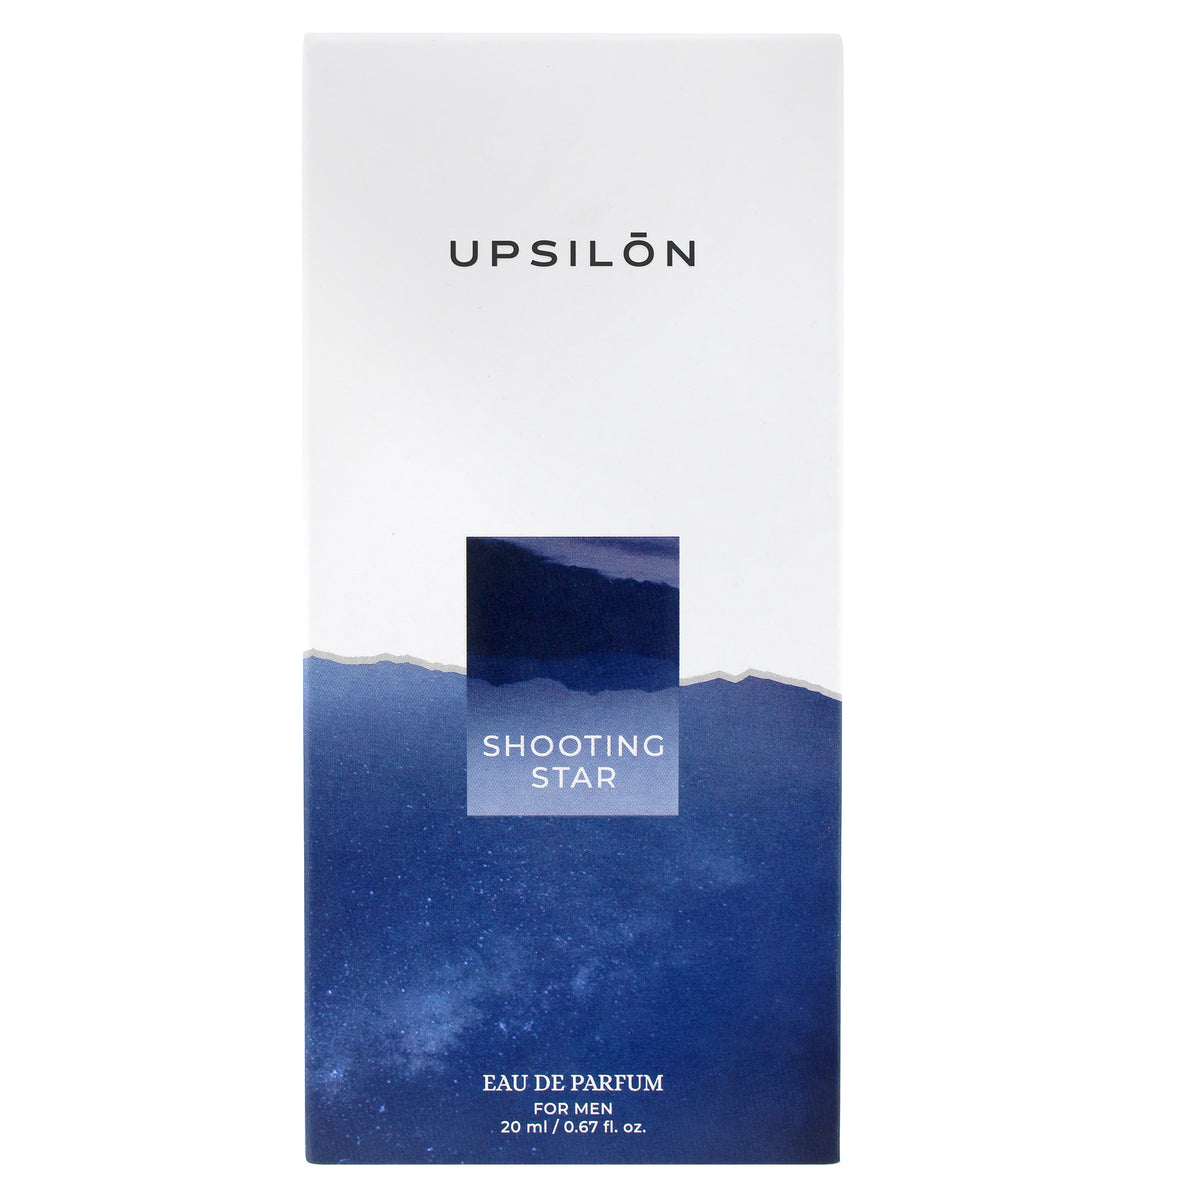 UPSILON Shooting Star Eau de Parfum for Men, 20 ml/0.67 fl. oz